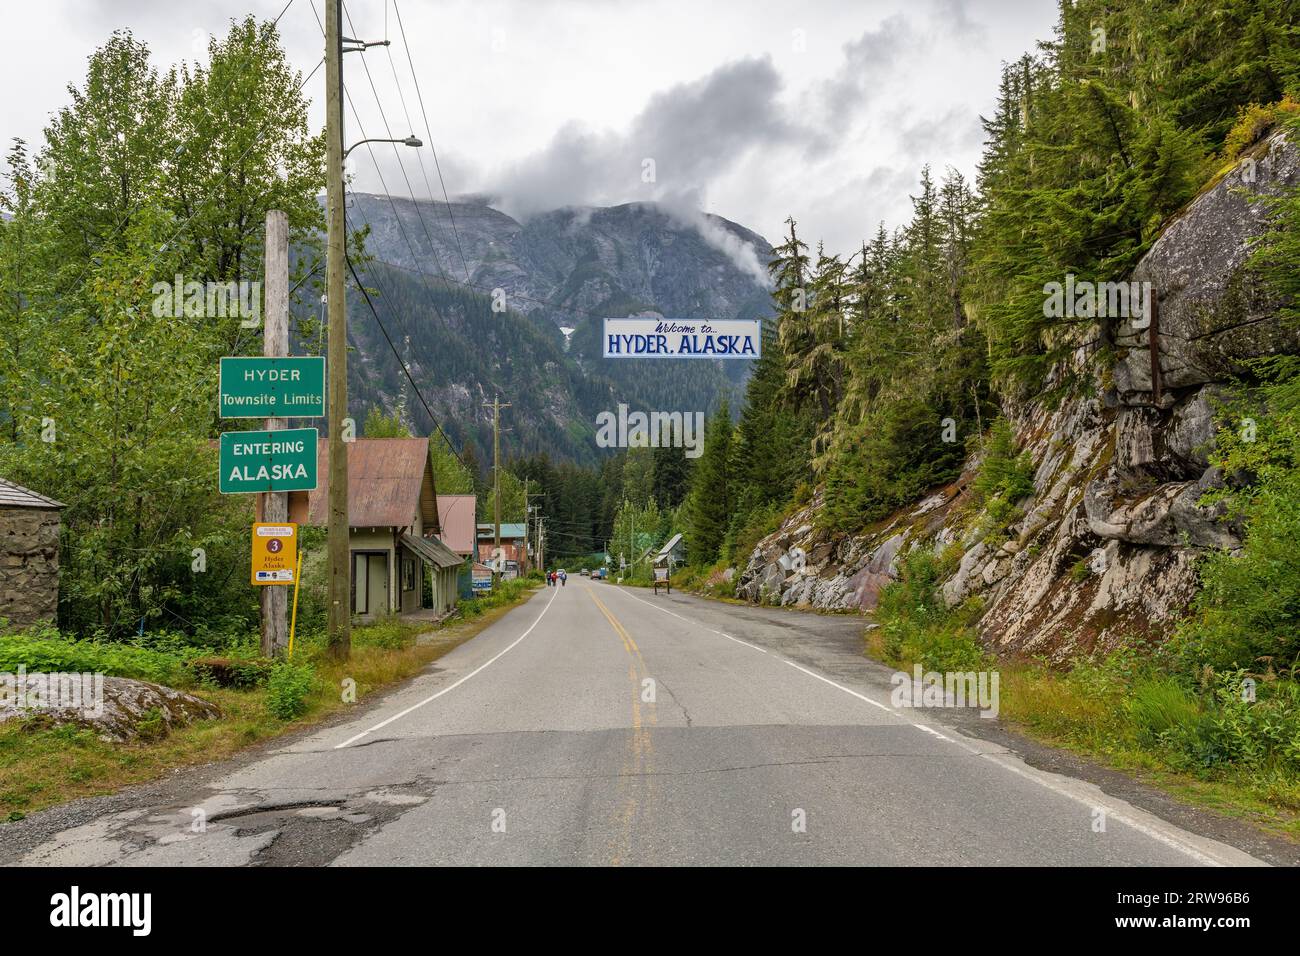 Entrée de la ville de Hyder après le passage frontalier canado-américain, Alaska, États-Unis. Banque D'Images